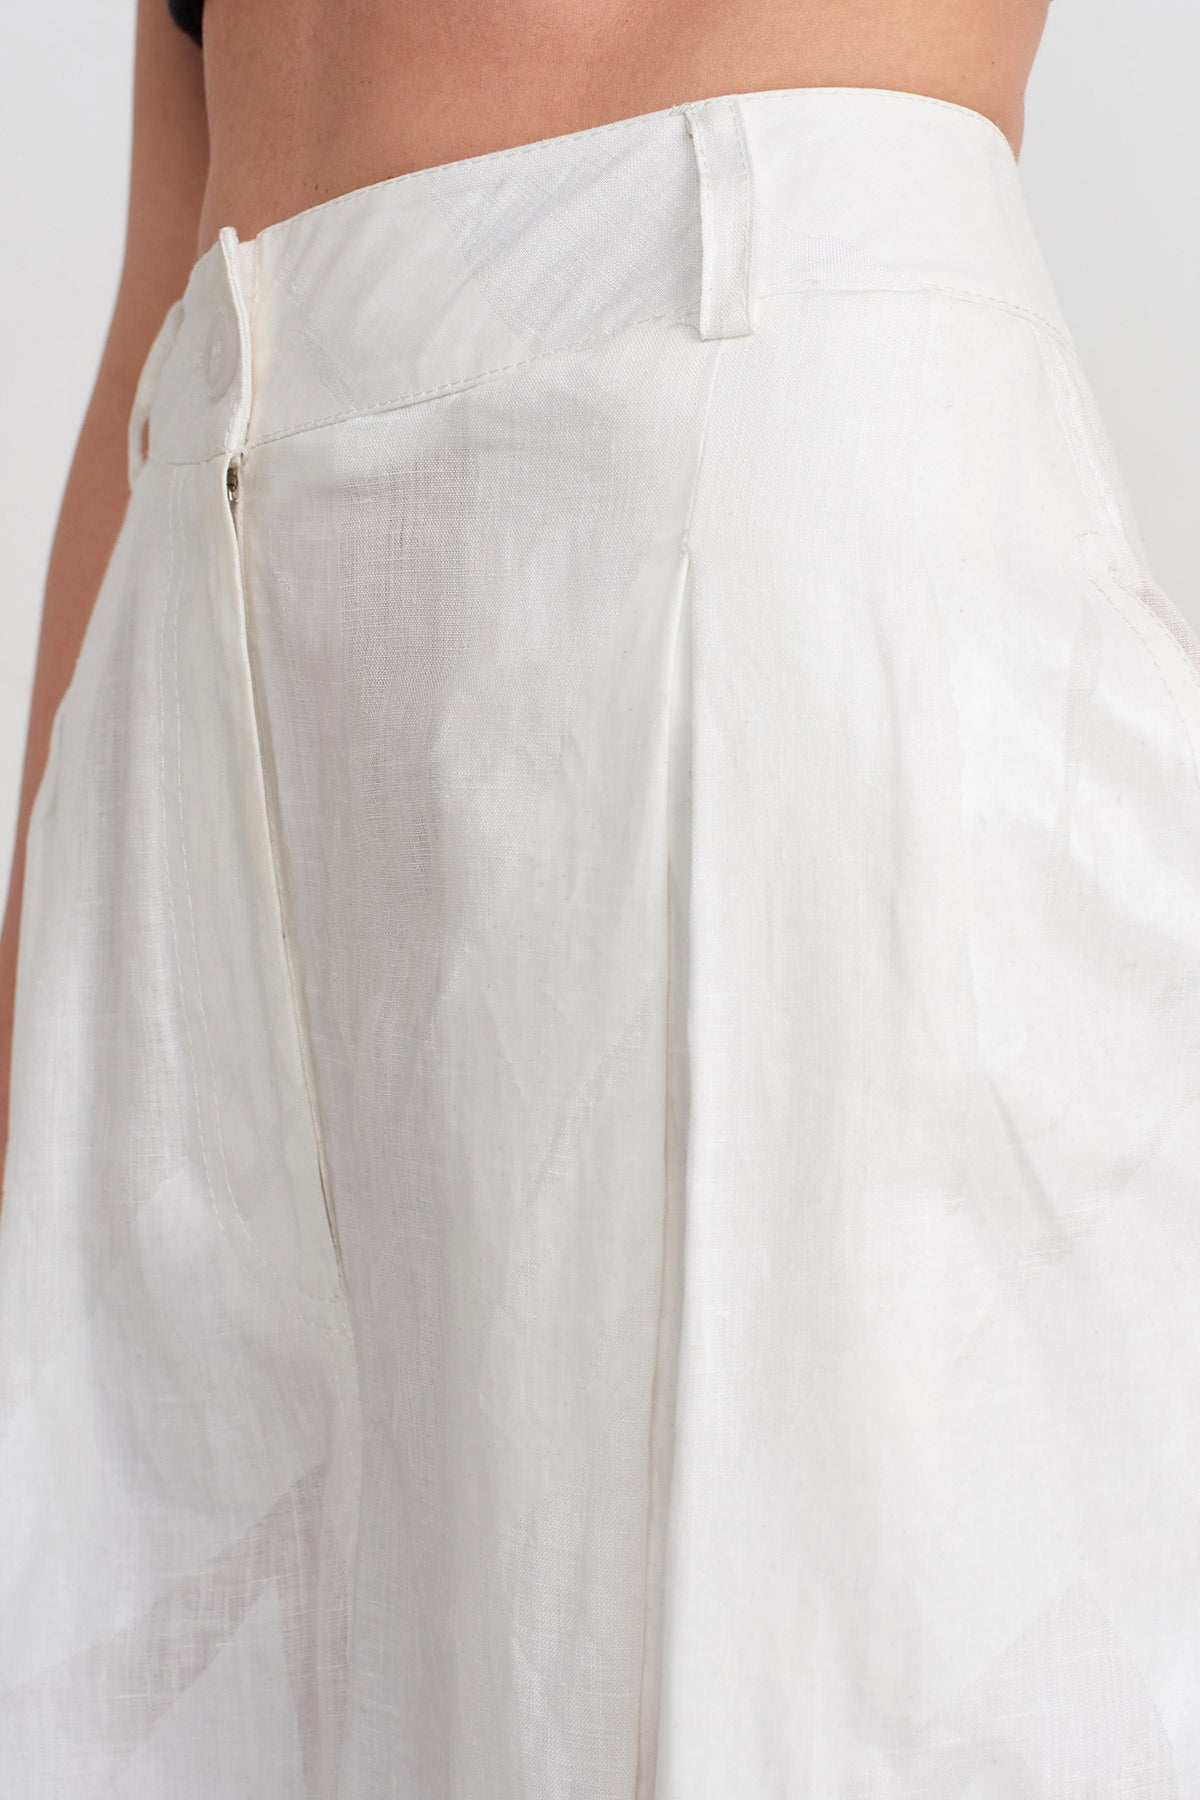 Kırık Beyaz Tona Ton Baskılı Maxi Boy Pantolon-Y243013077